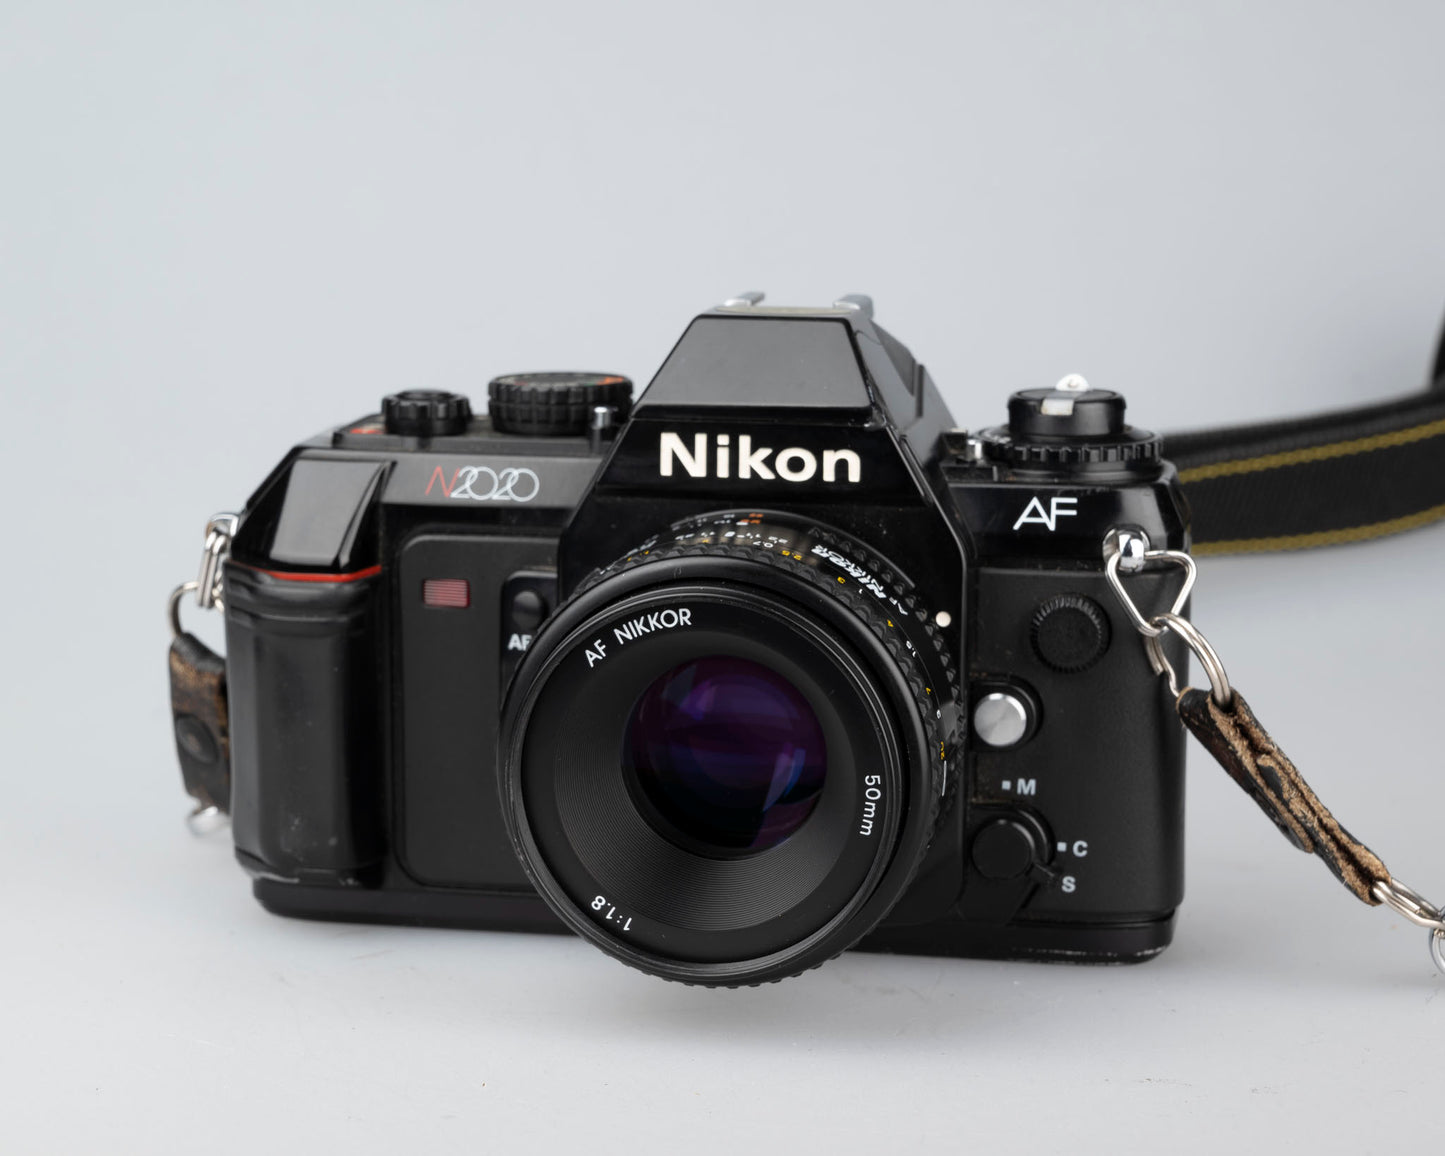 Nikon N2020 35mm film SLR w/ AF Nikkor 50mm f1.8 lens